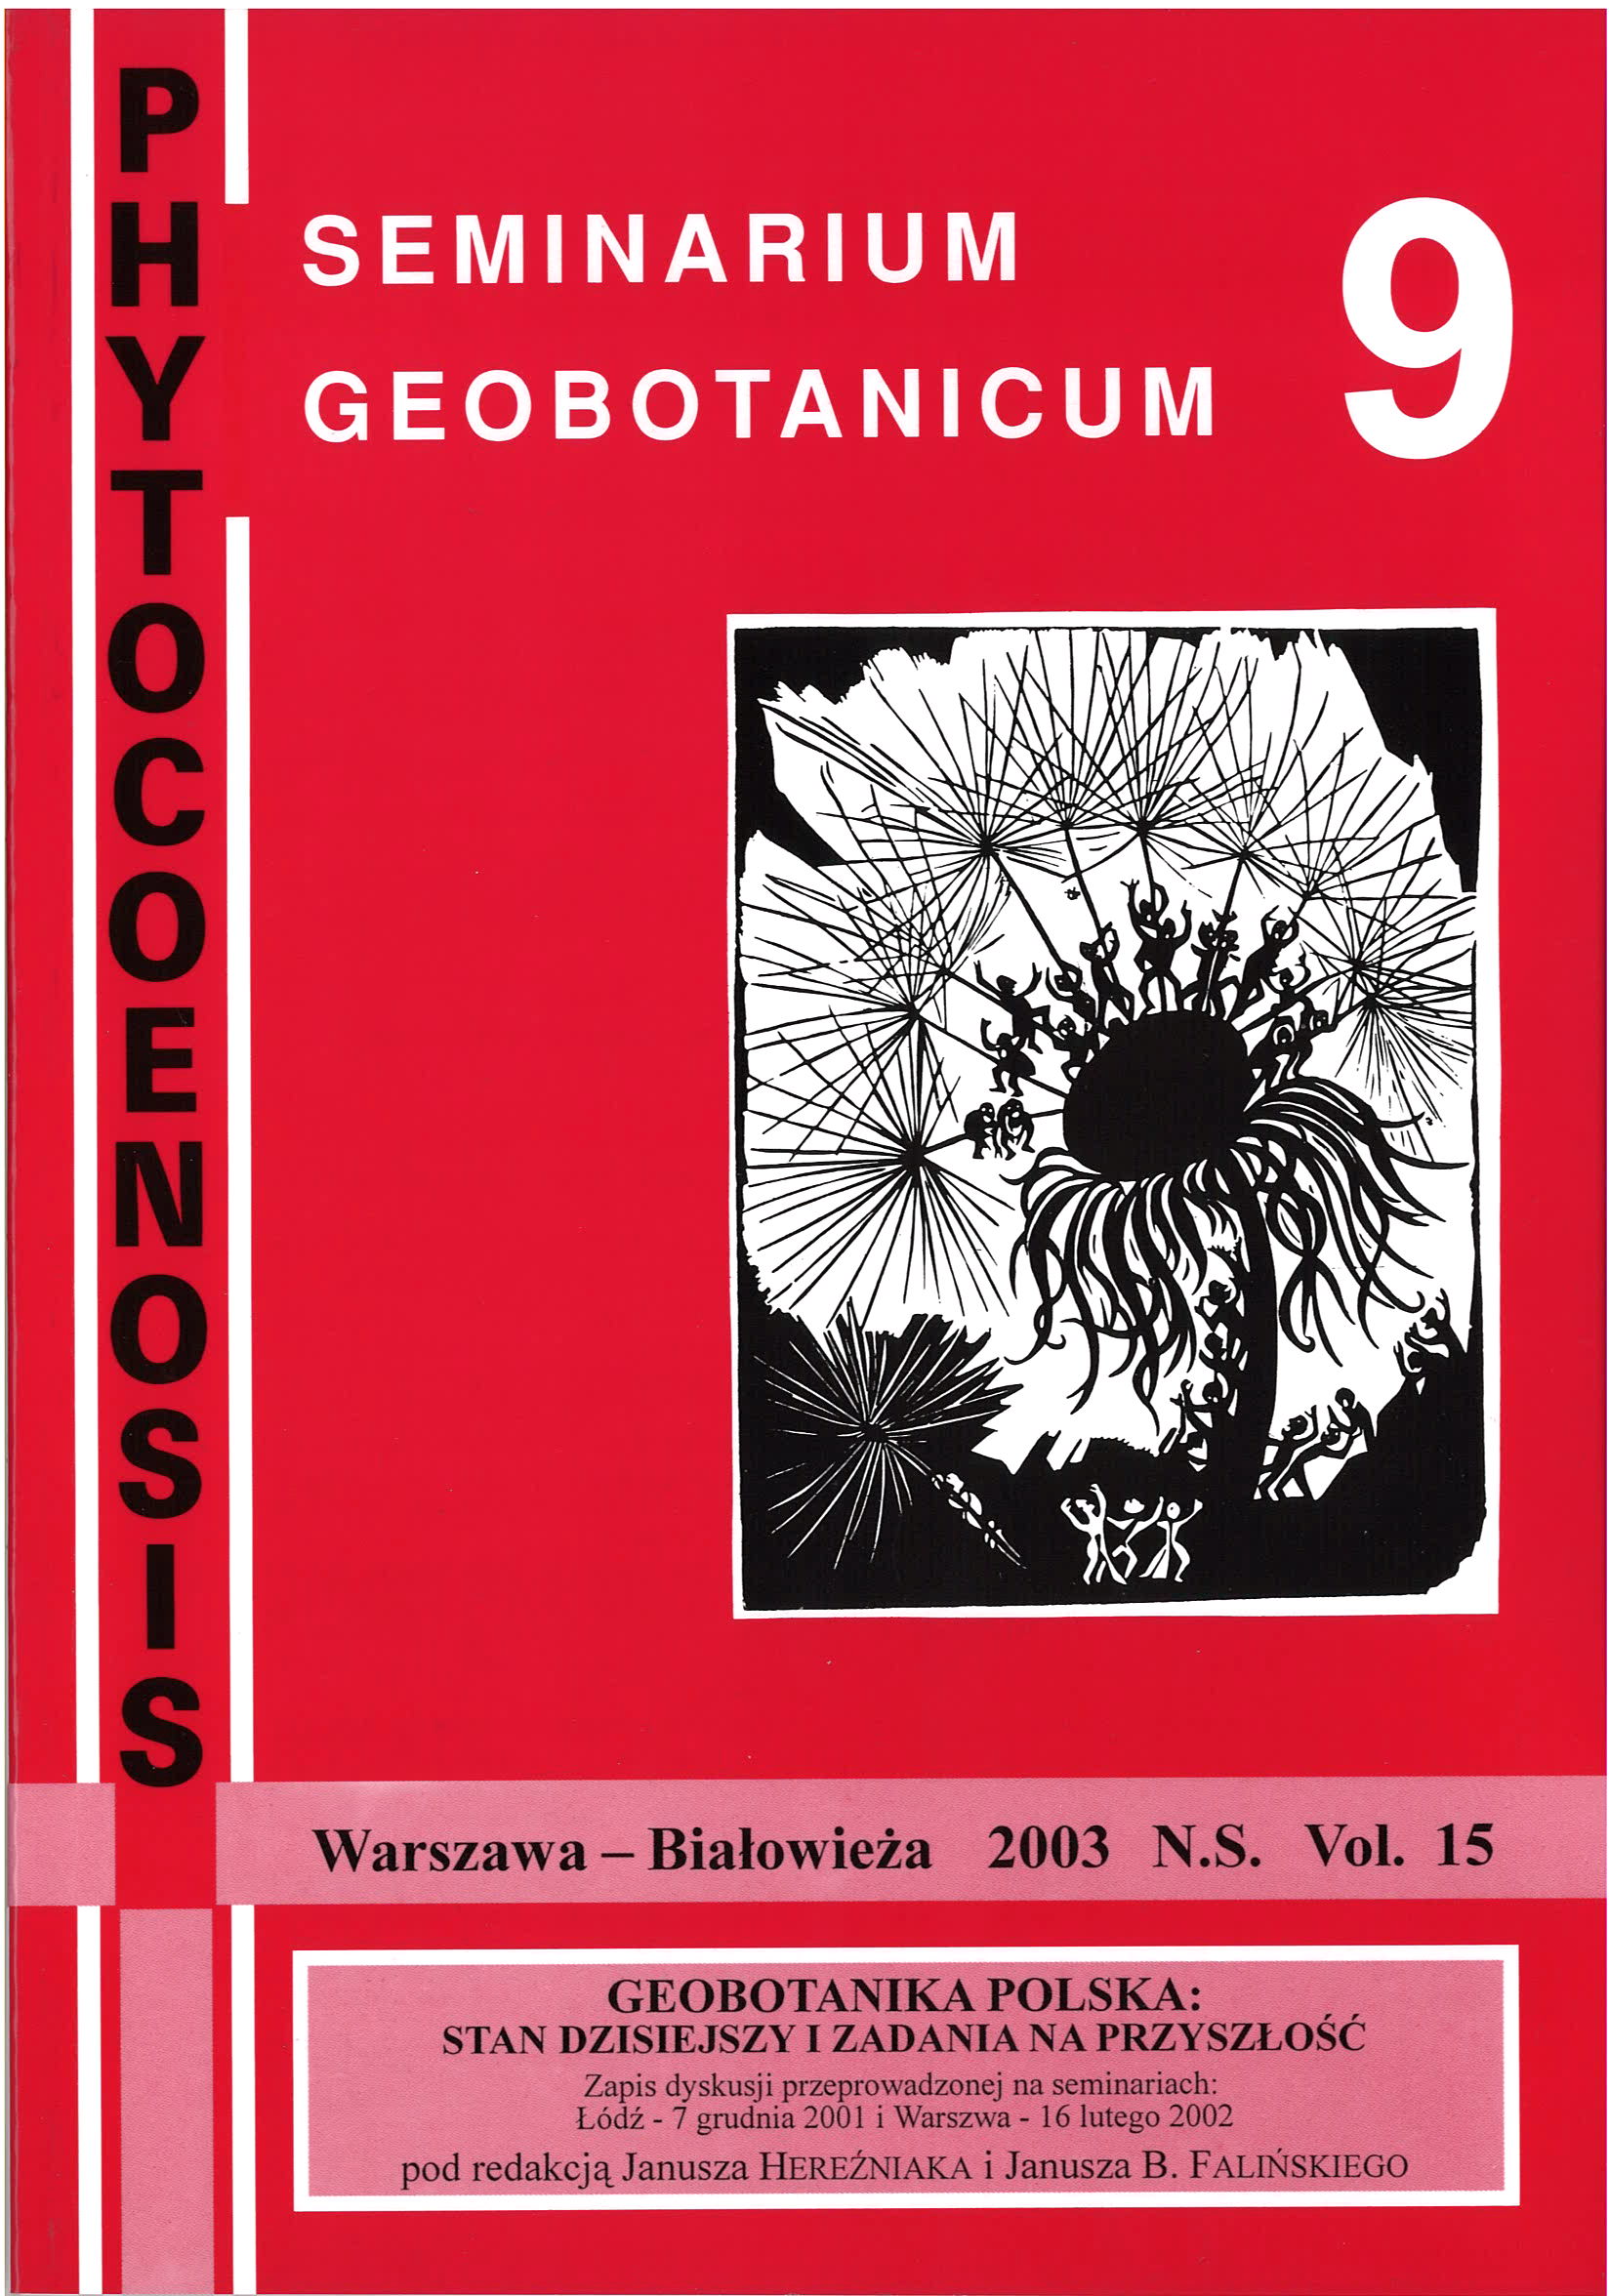 Phytocoenosis (N.S.) 15, Seminarium Geobotanicum 9